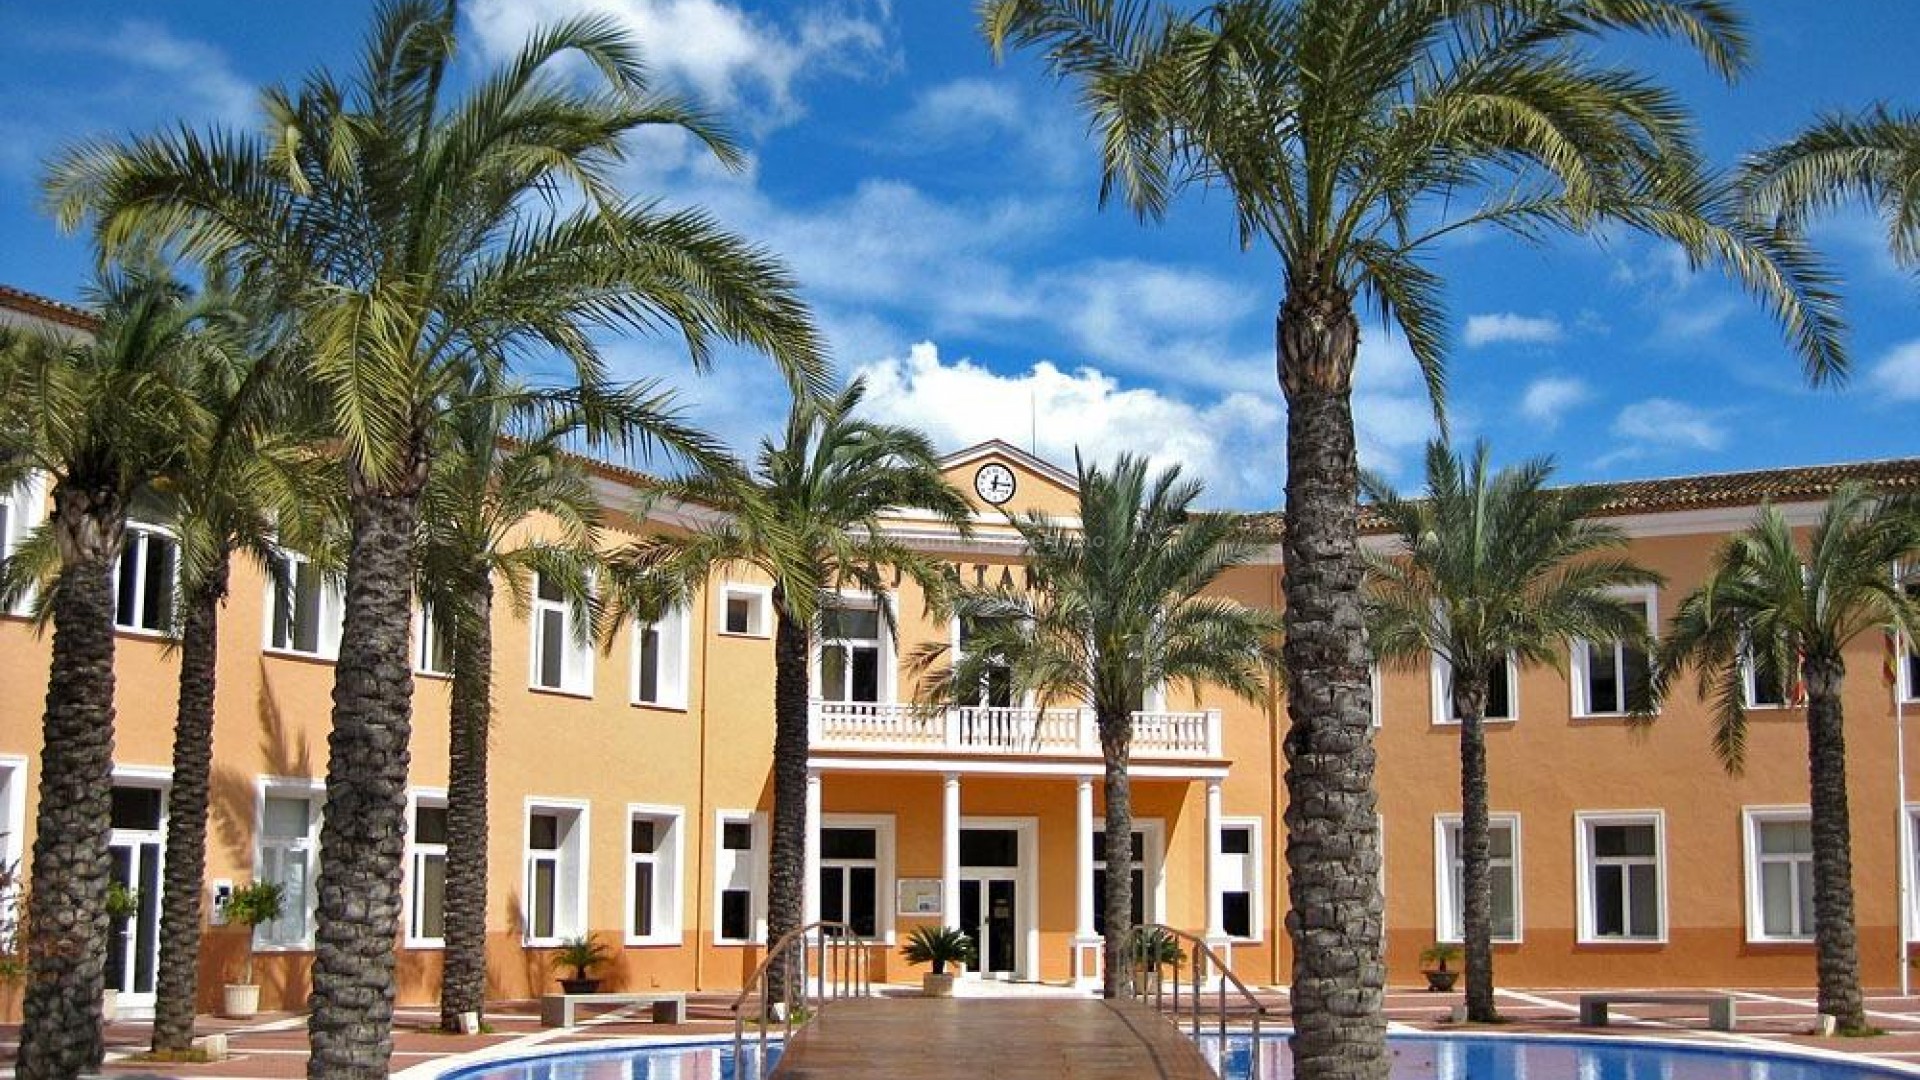 Boligkomplekset med luksus-leiligheter og toppleiligheter i El Verger i Denia, 3 soverom, 3 bad, romslige terrasser og flere svømmebasseng, flott utsikt